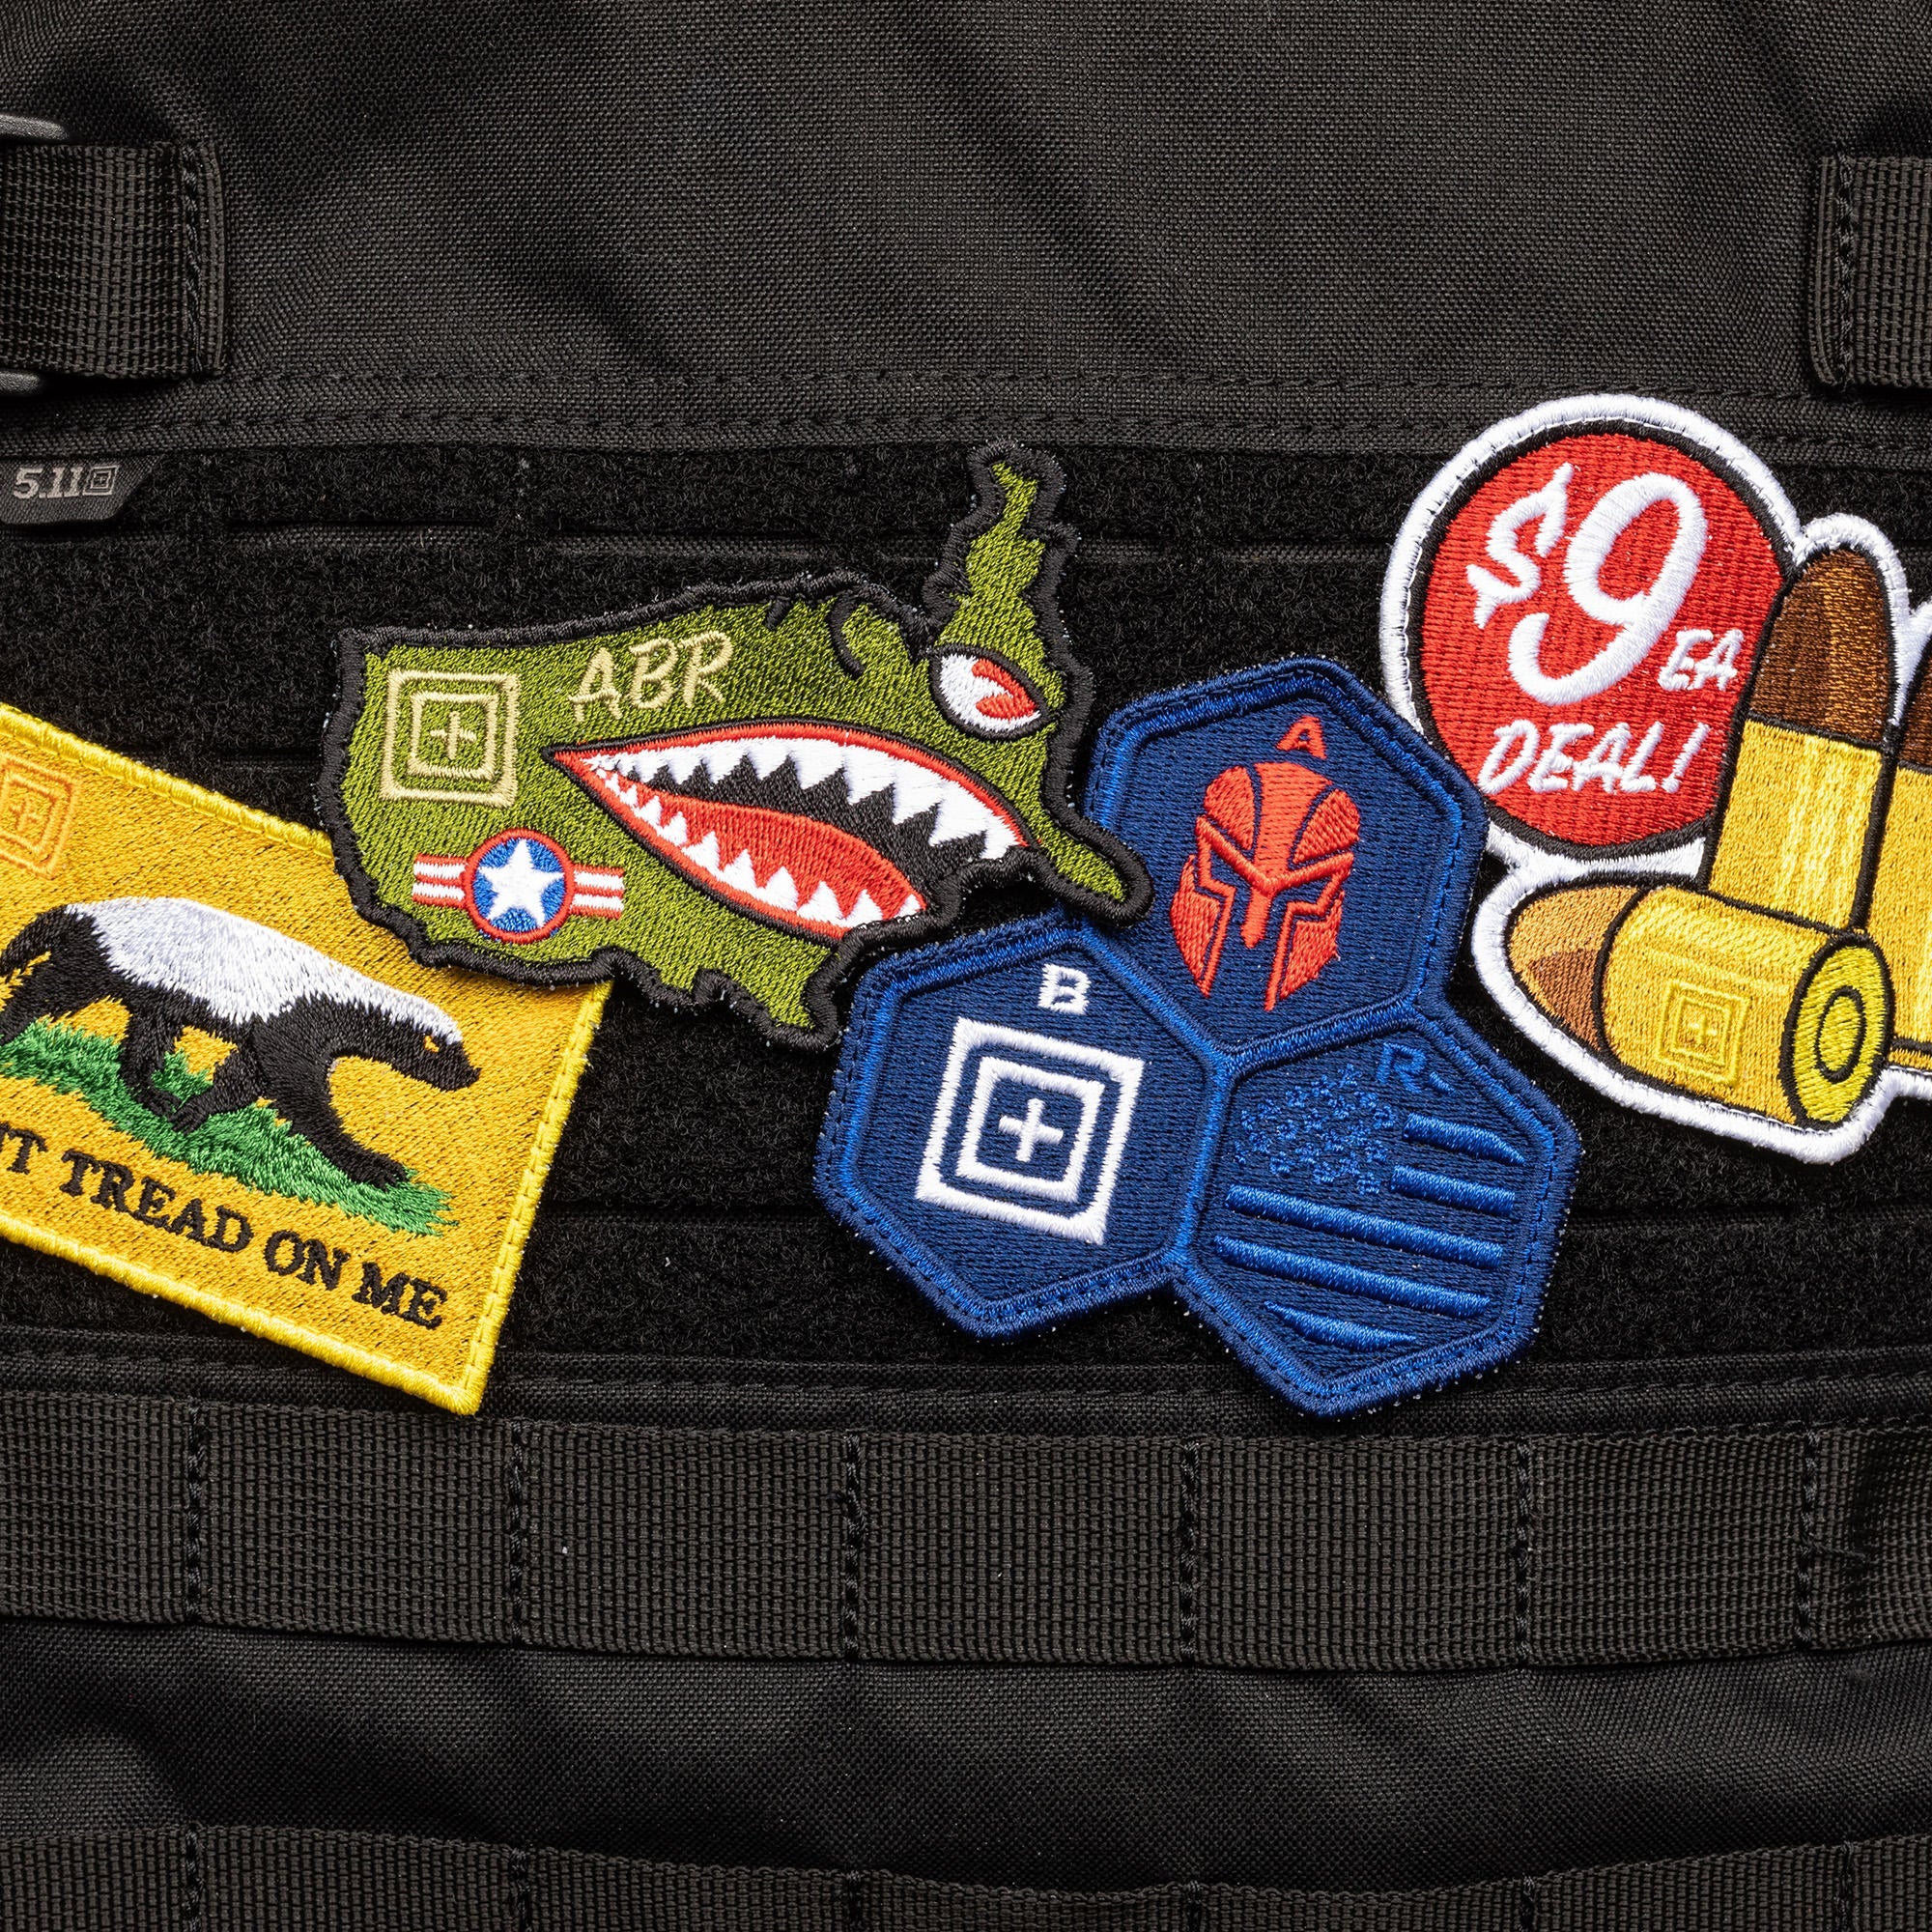 immagine di una collezione di patch velcro disponibili su backpacco